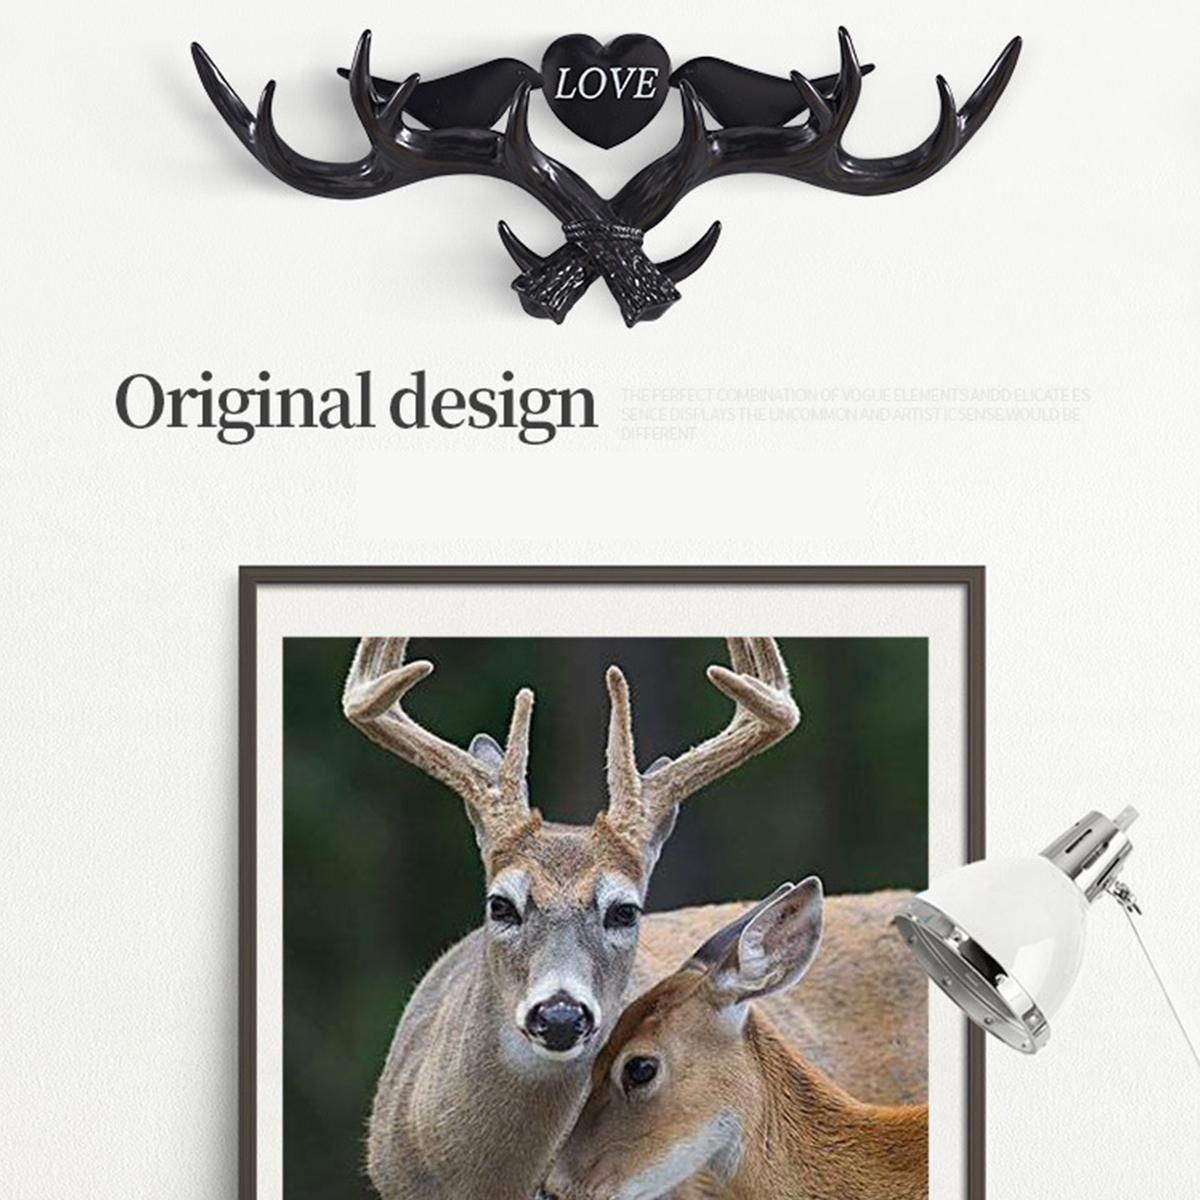 Love-Vintage-Deer-Antler-Wall-Hanger-Decoration-Coat-Hook-And-Hat-Rack-4-Color-Holder-1403840-3